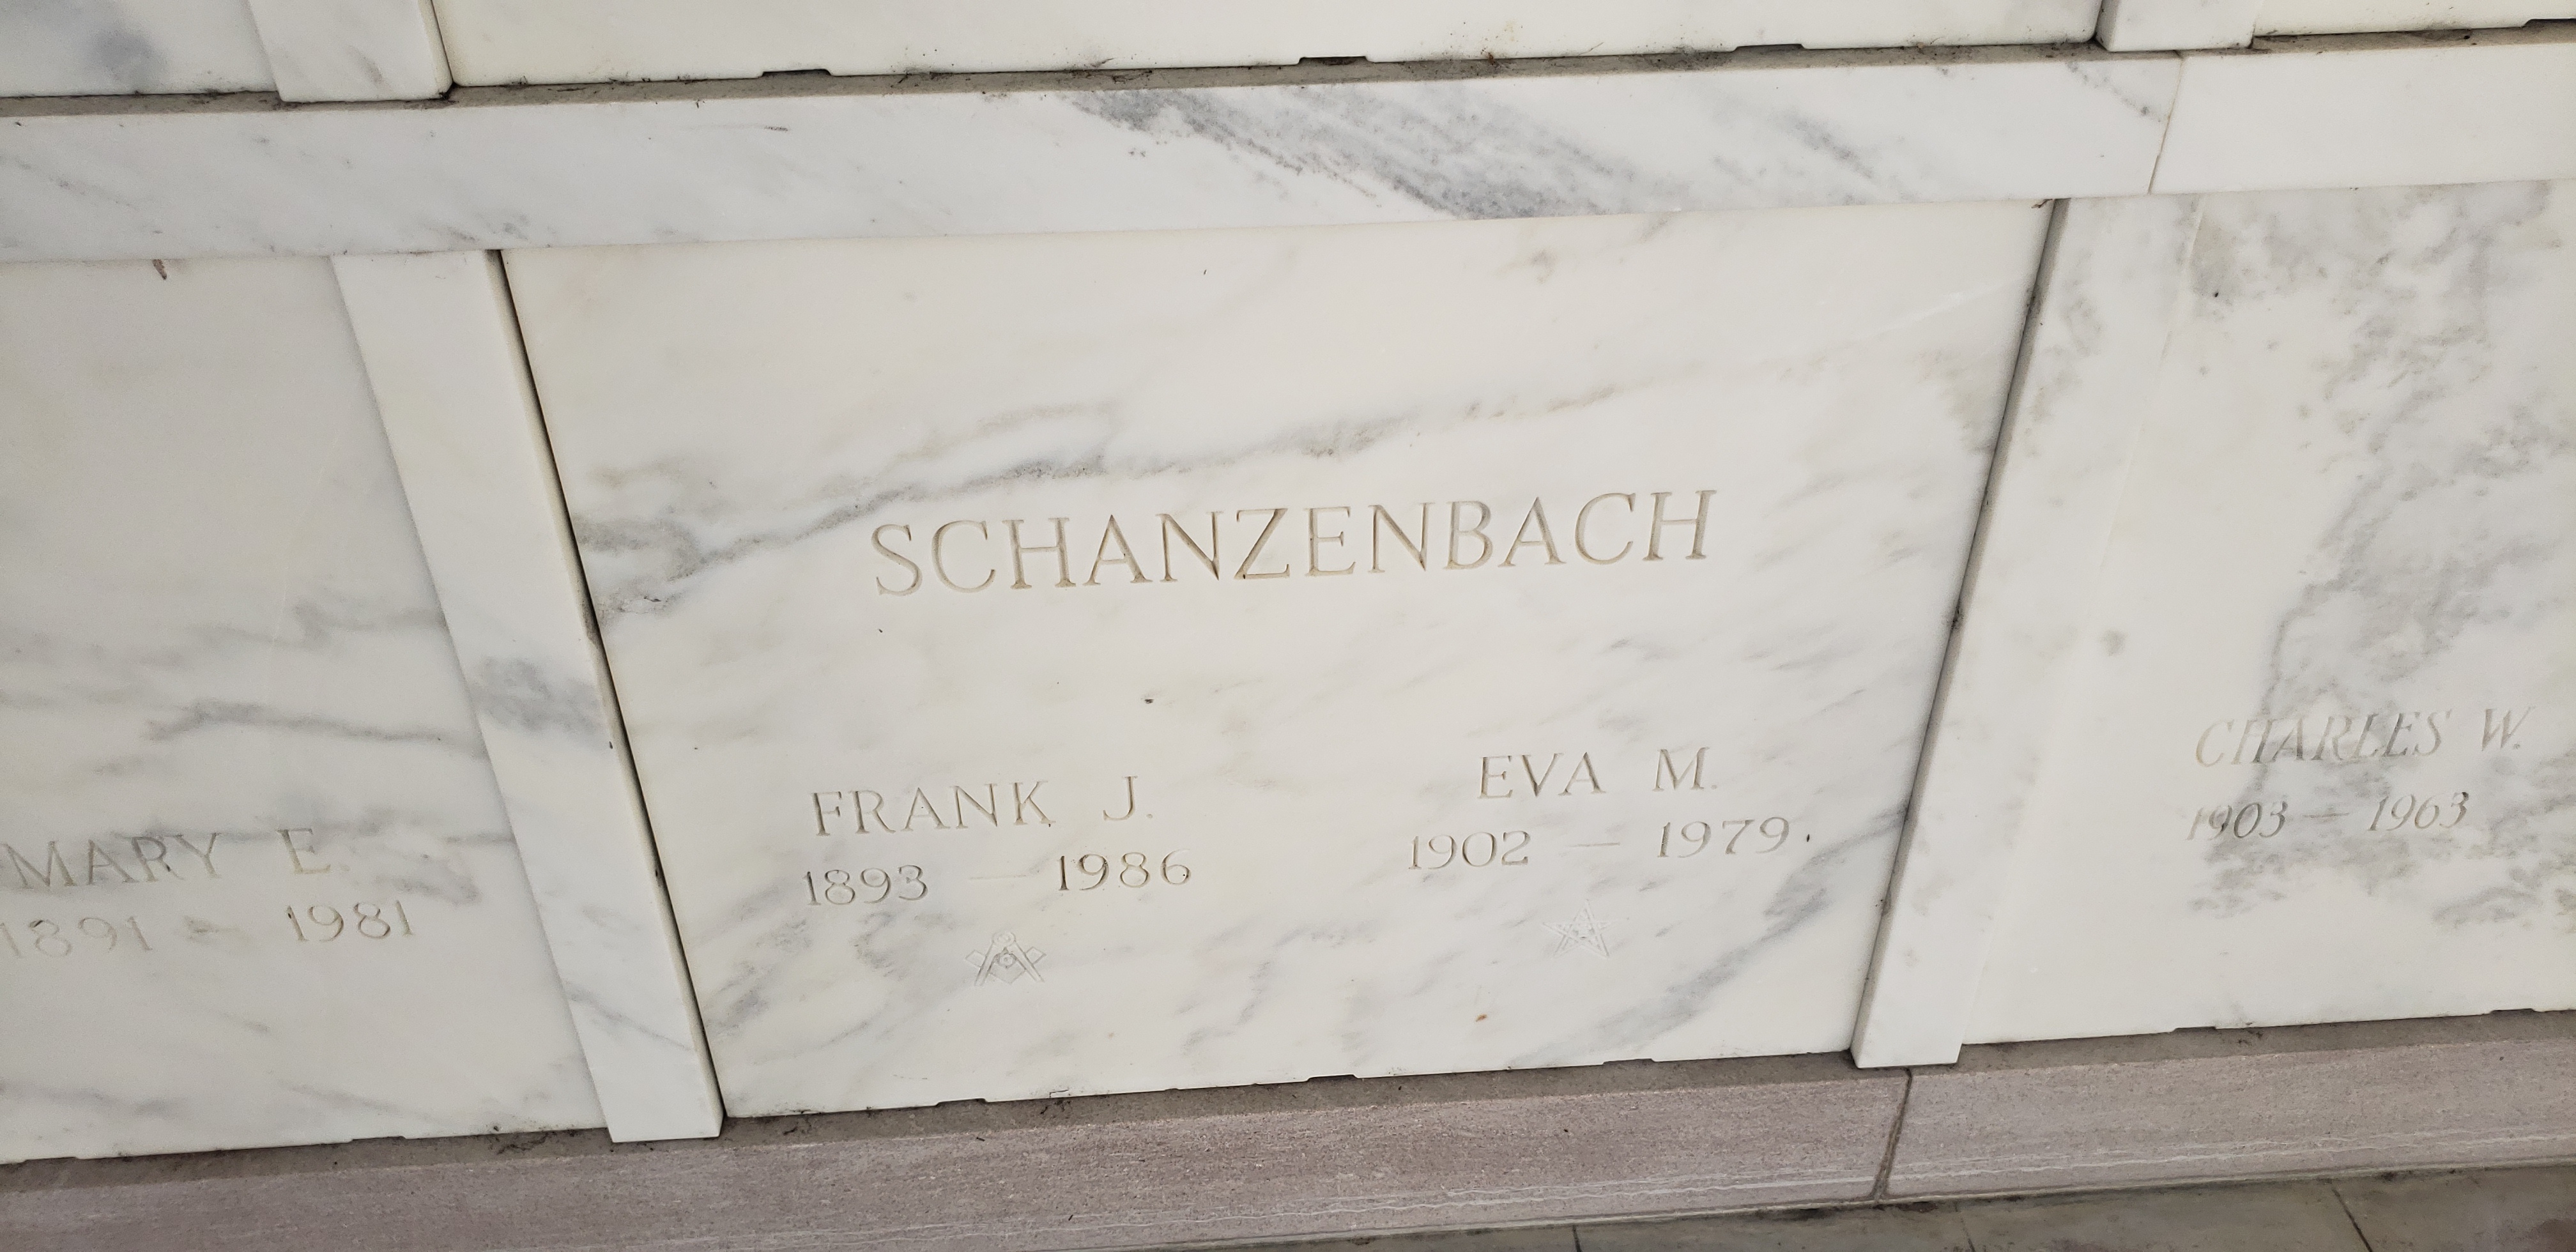 Frank J Schanzenbach